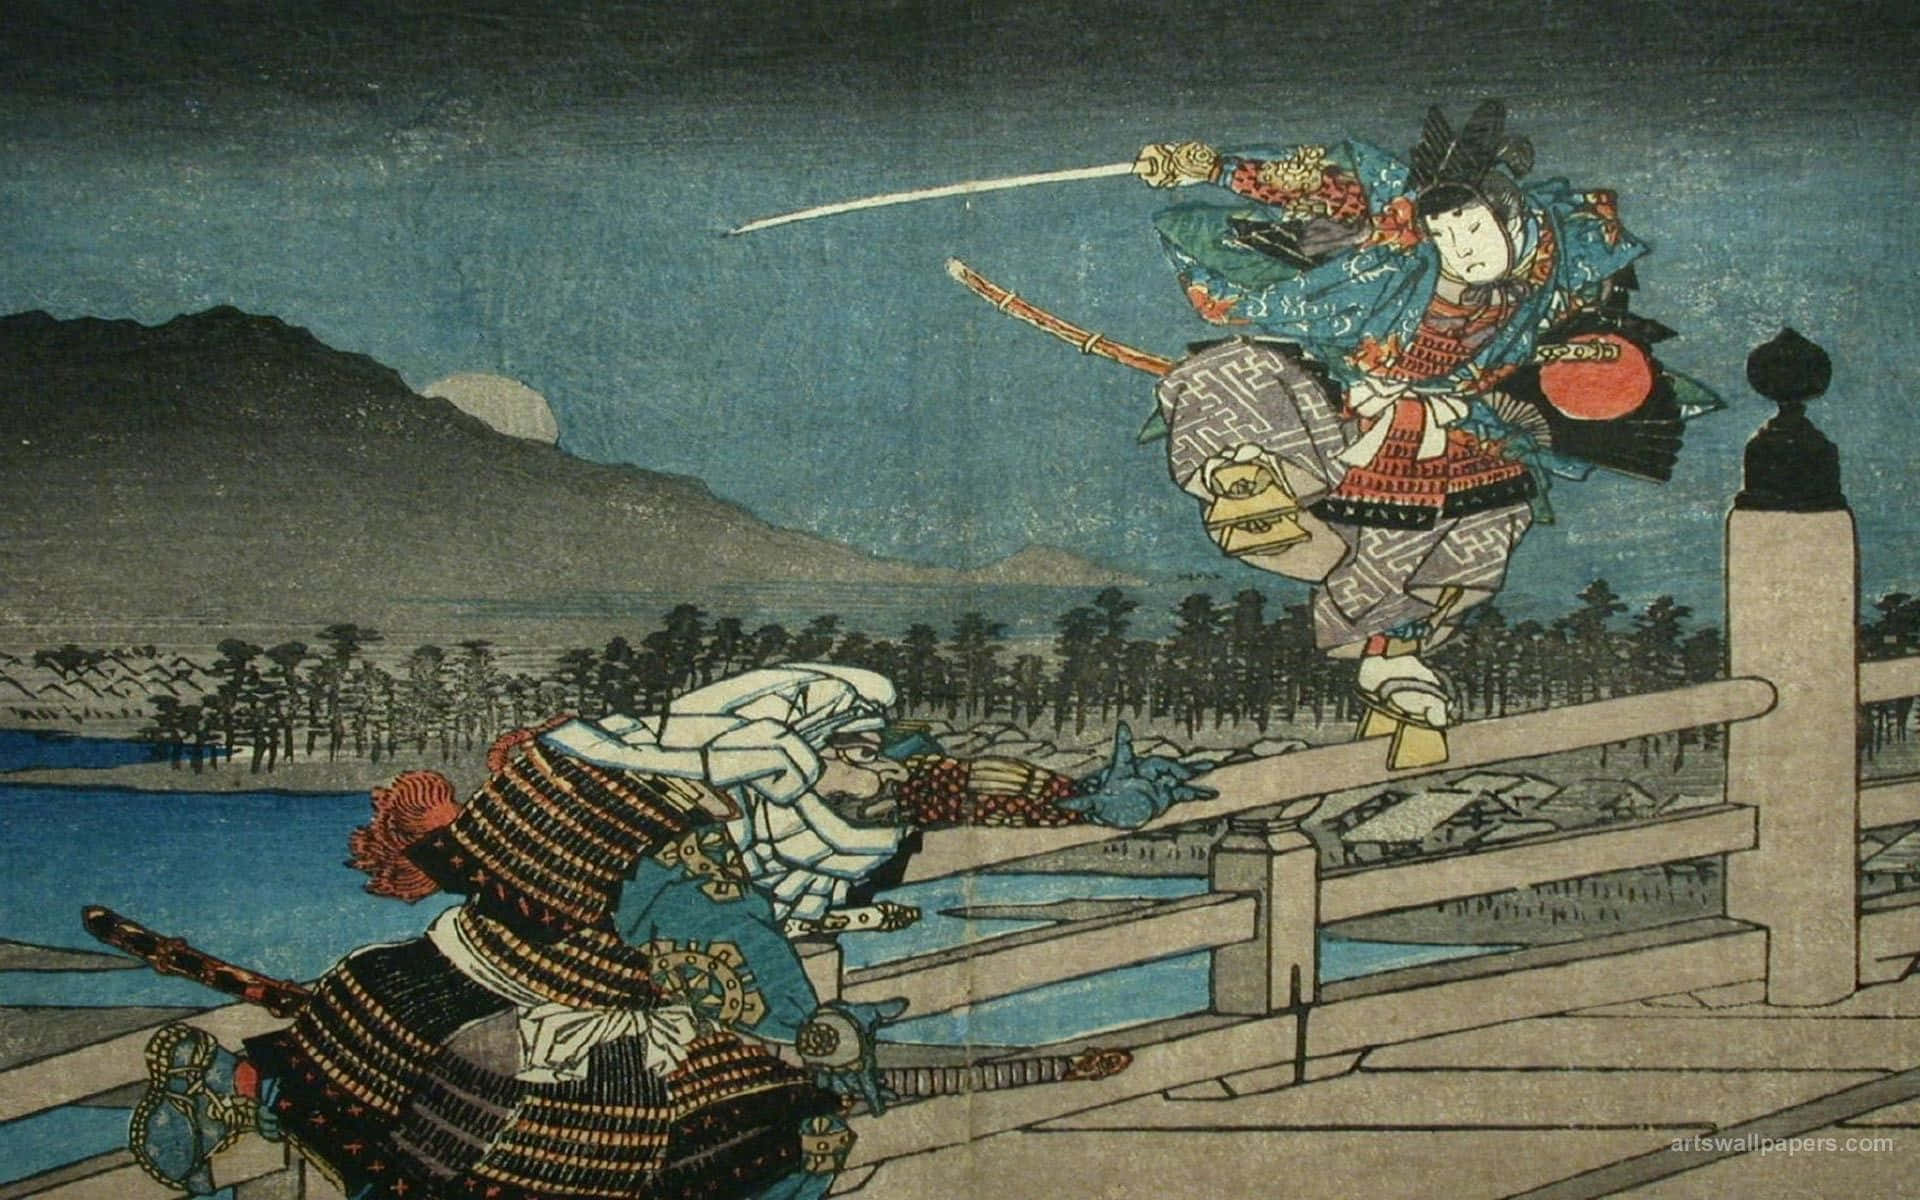 Diealte Japanische Kultur Dargestellt Durch Kunstvoll Geschnitzte Kraniche. Wallpaper